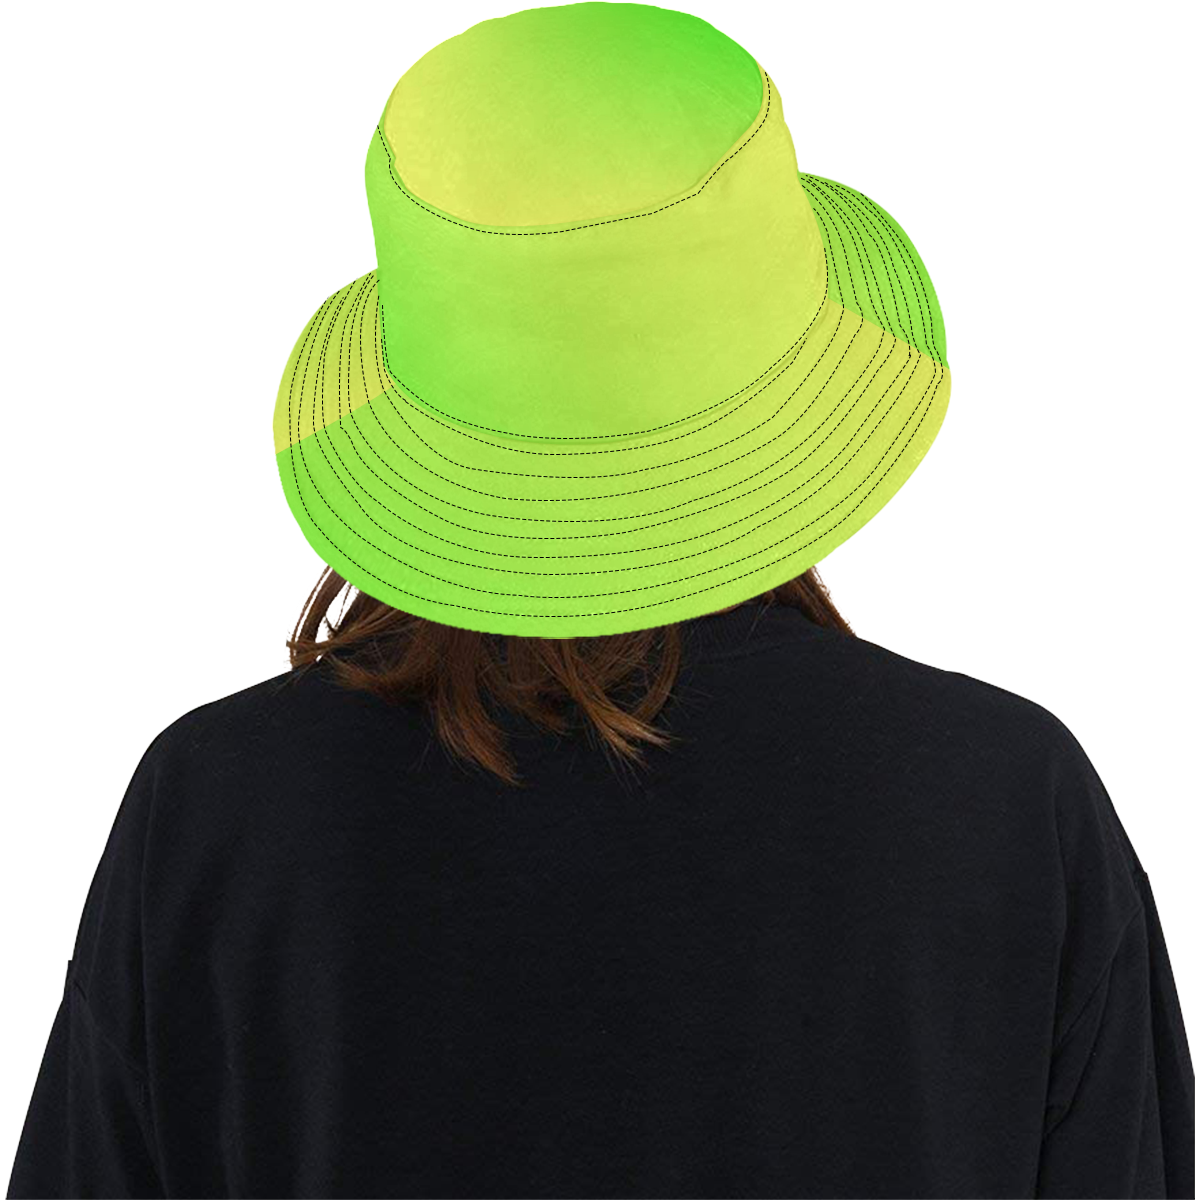 Neon Yellow Green Tie Dye All Over Print Bucket Hat